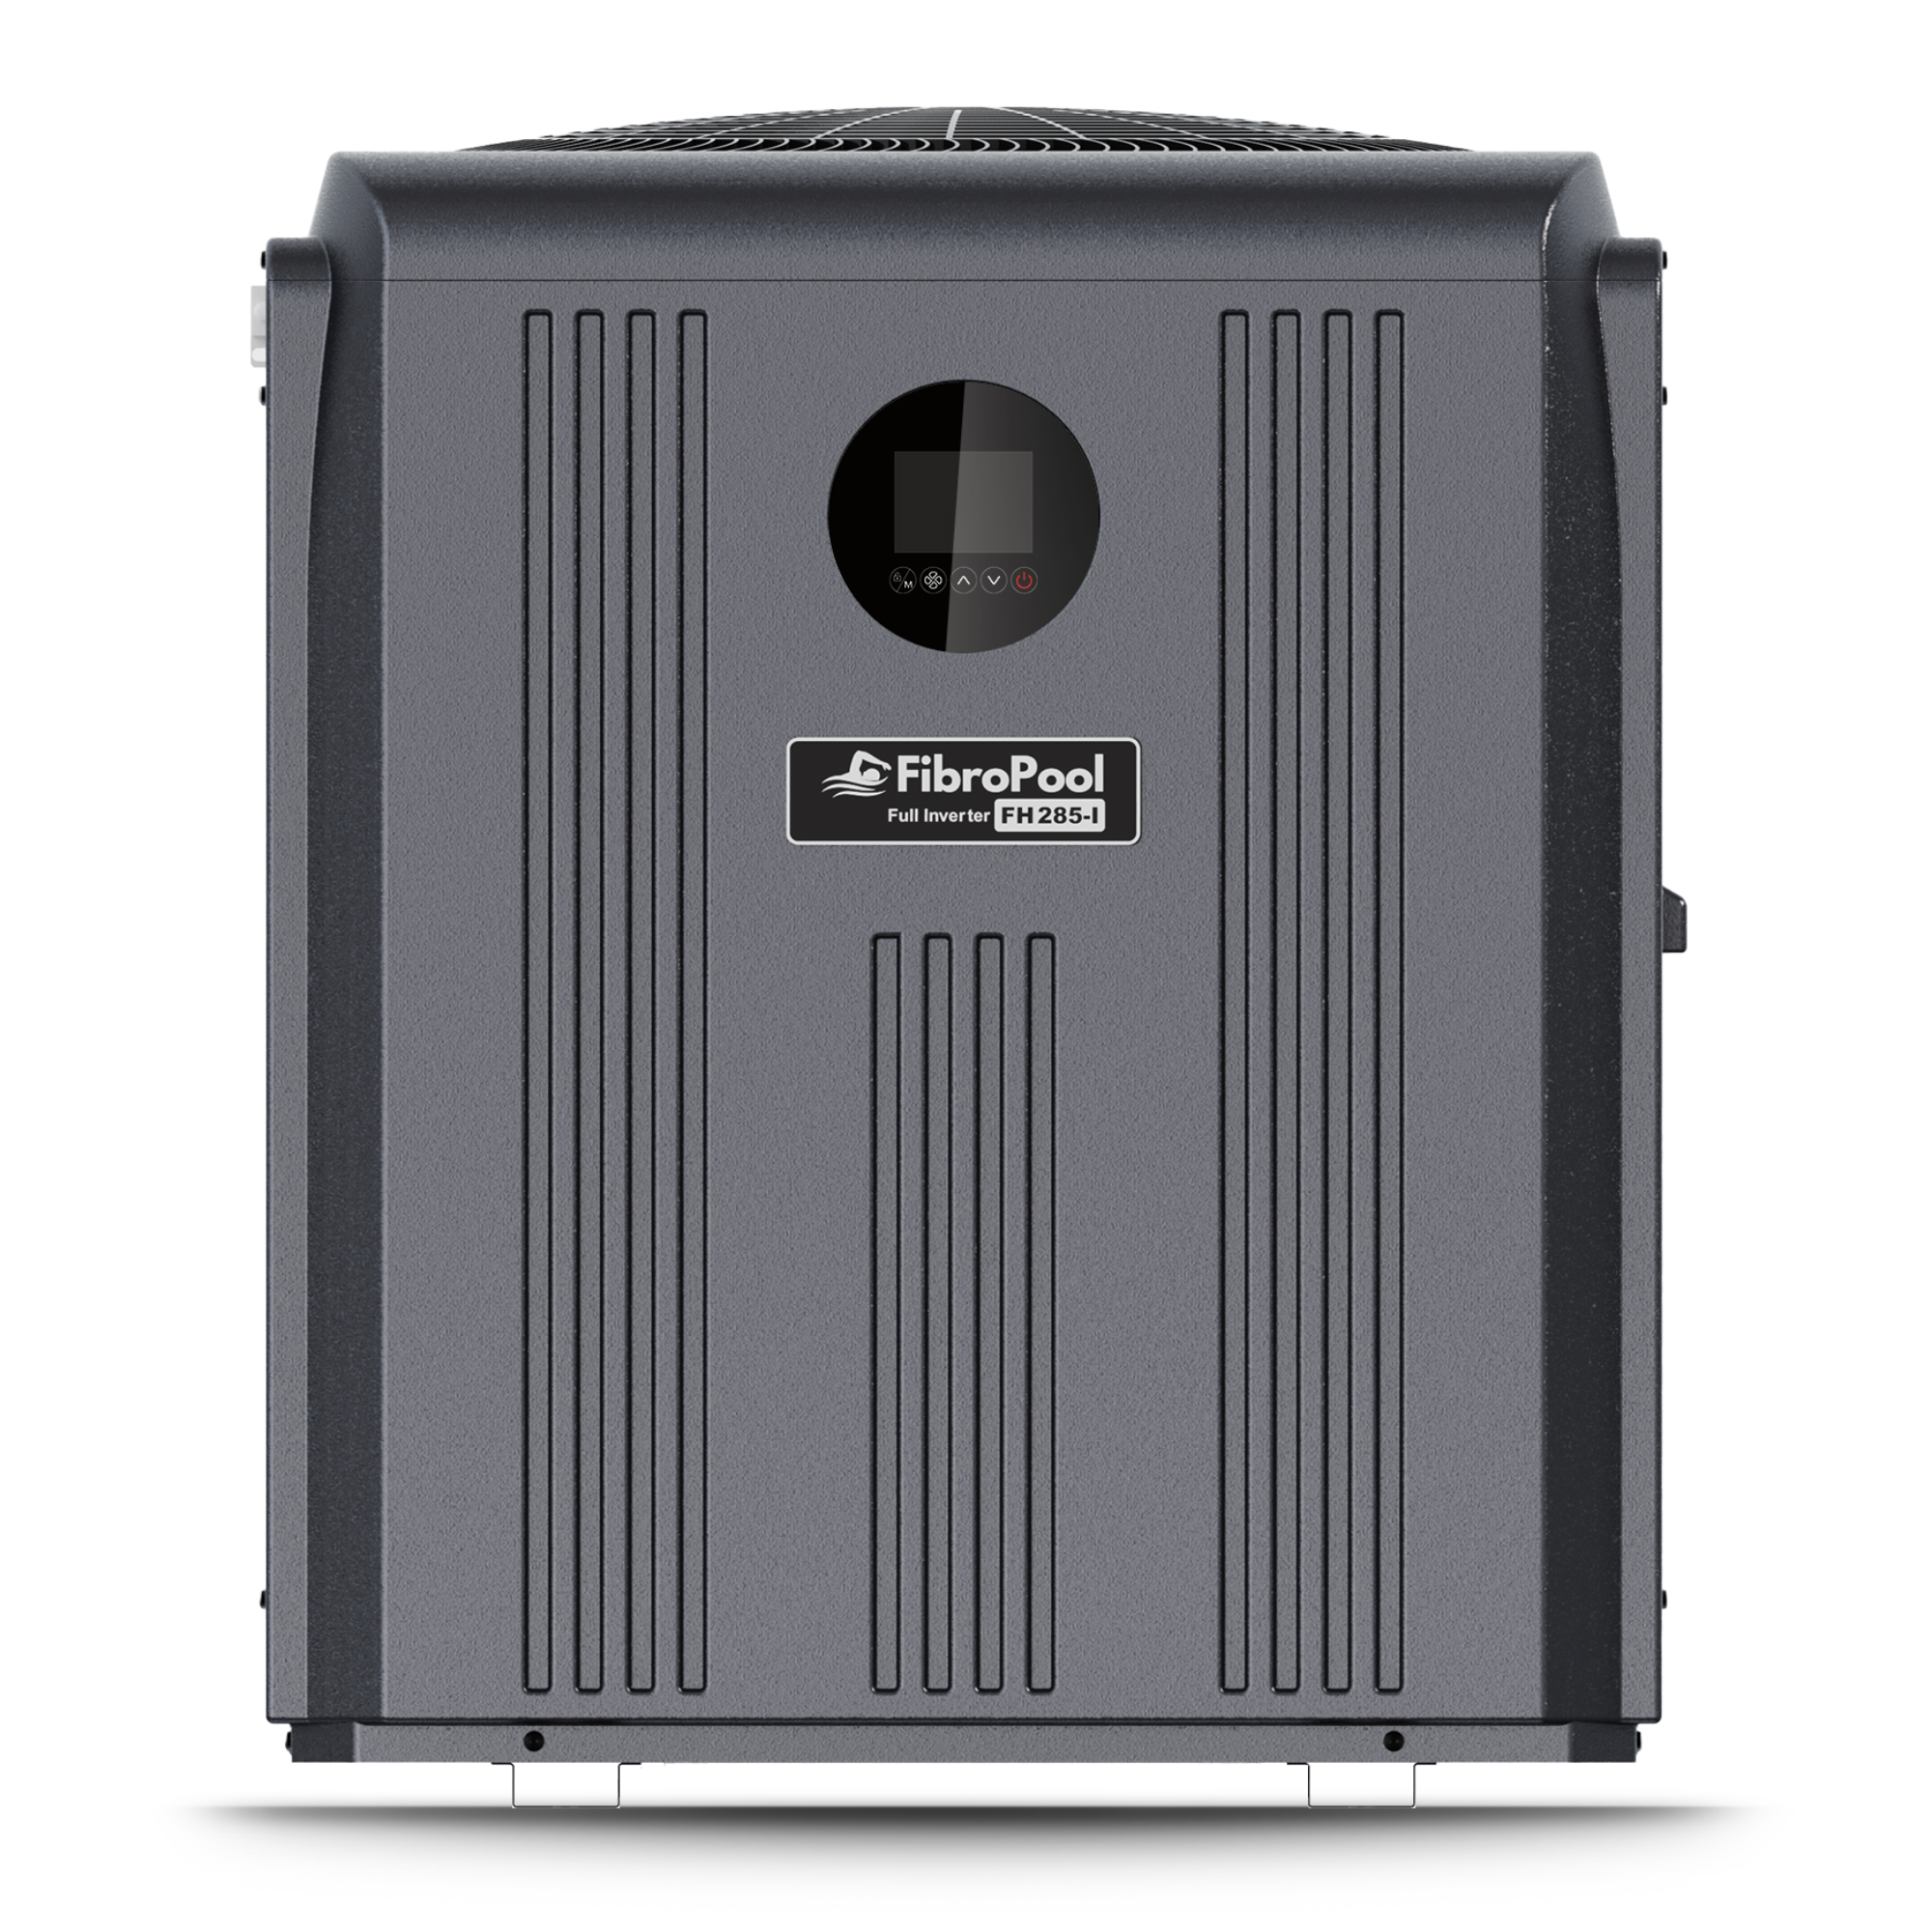 FH285-i 85,000 BTU Full Inverter Heat Pump